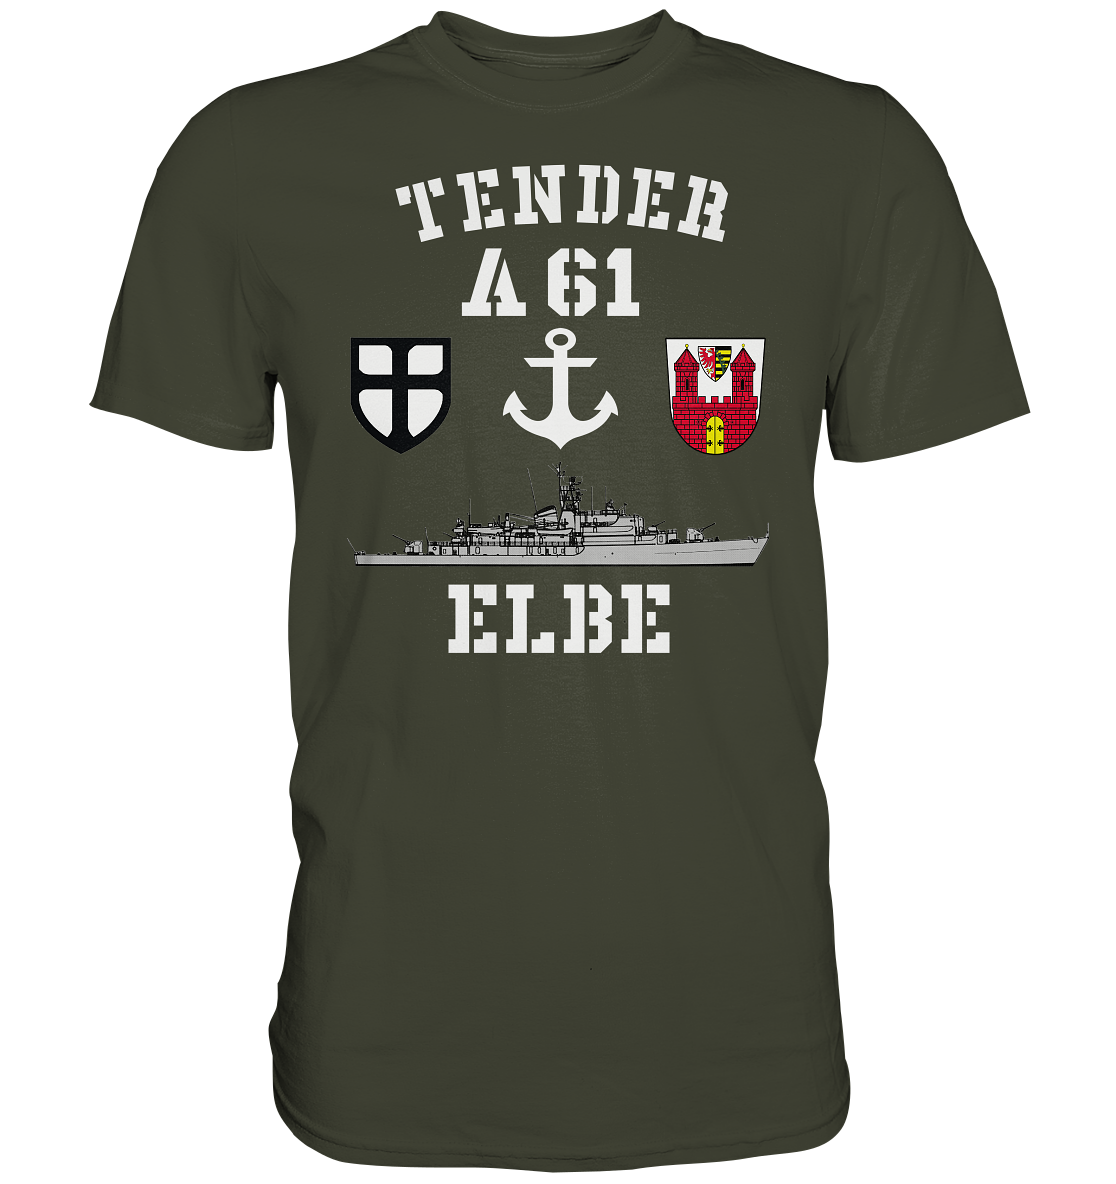 Tender A61 ELBE 7.SG ANKER - Premium Shirt